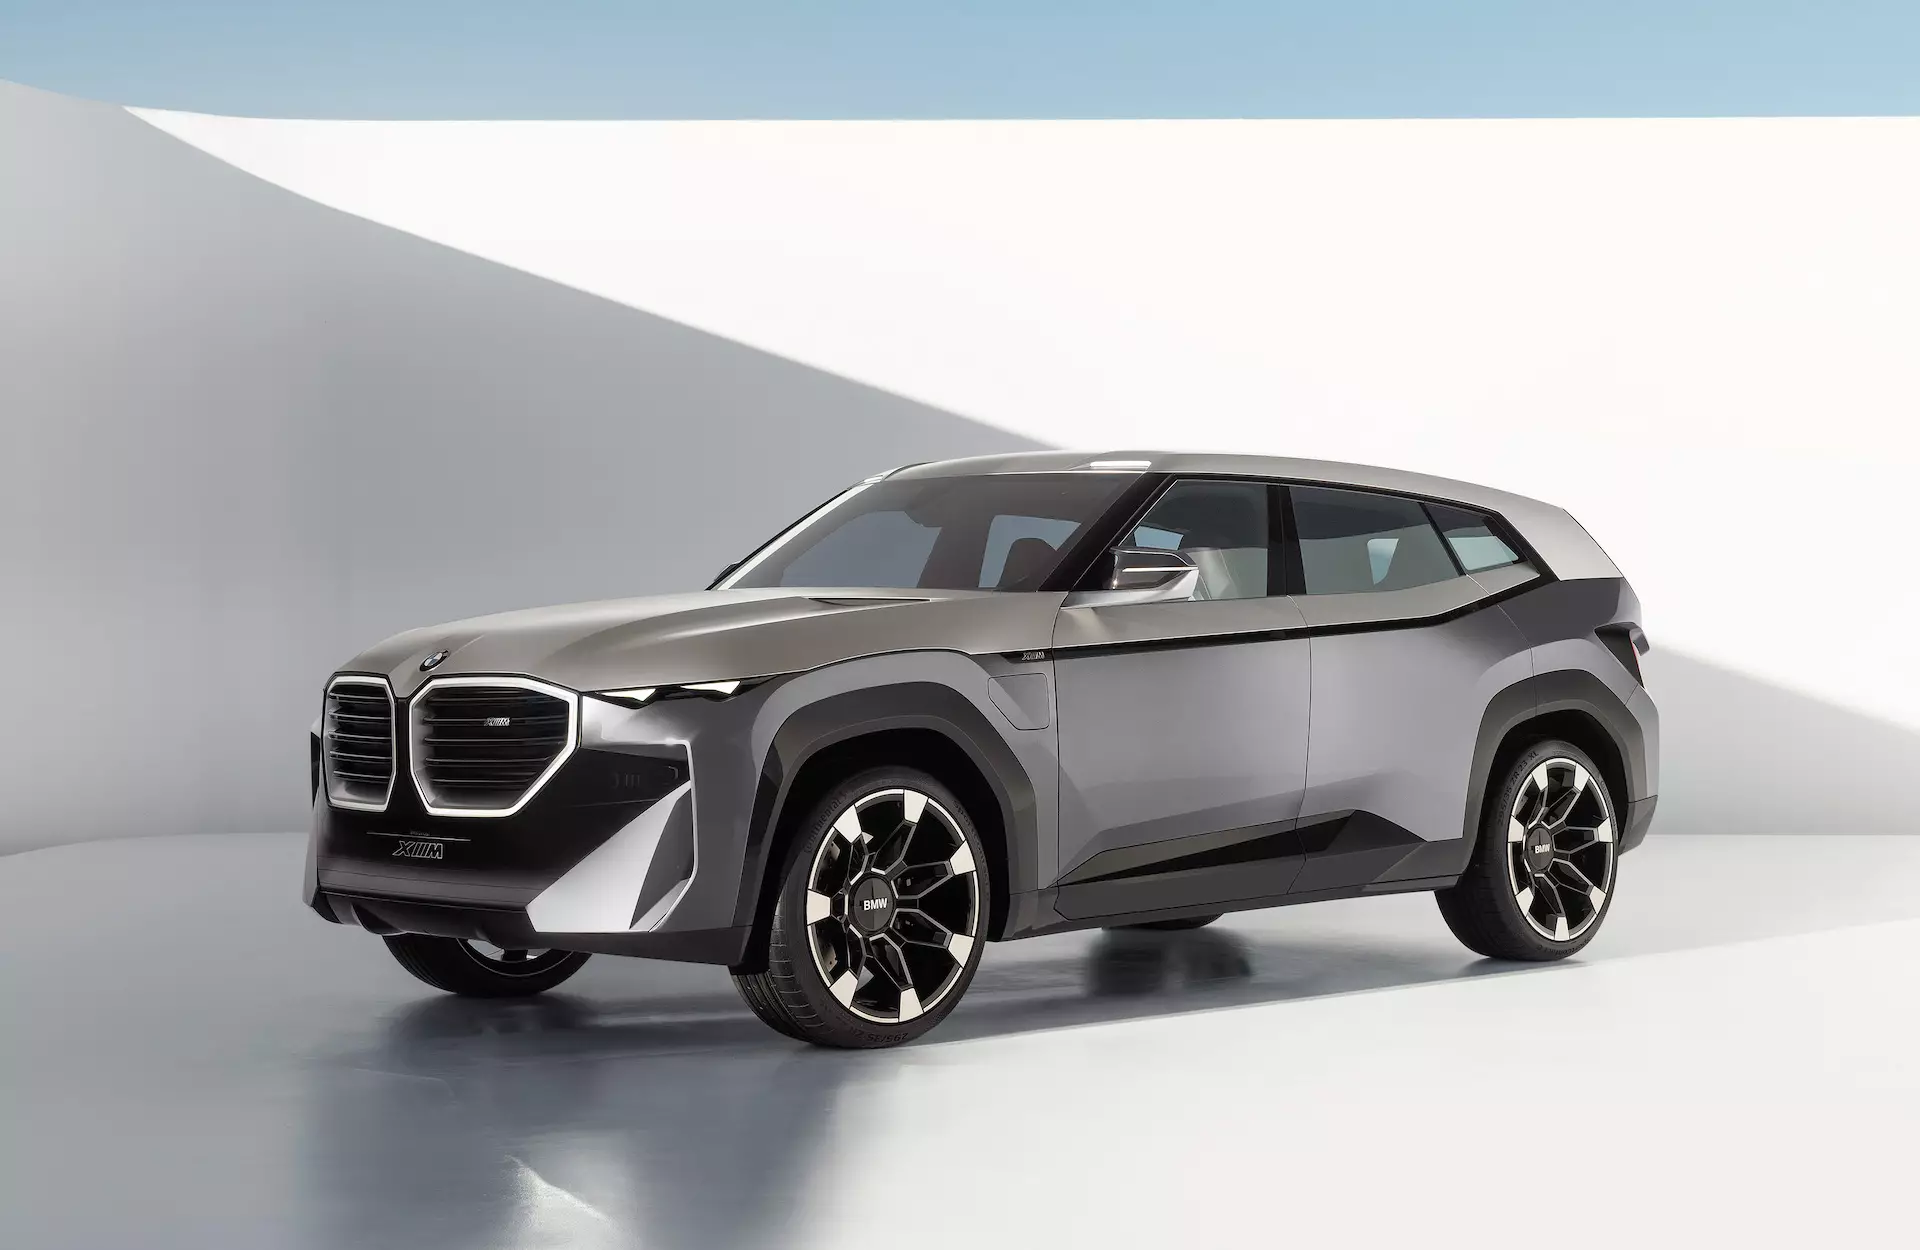 เตาย่างก็ใหญ่โต ทรงพลังด้วย เกี่ยวกับ BMW Concept XM